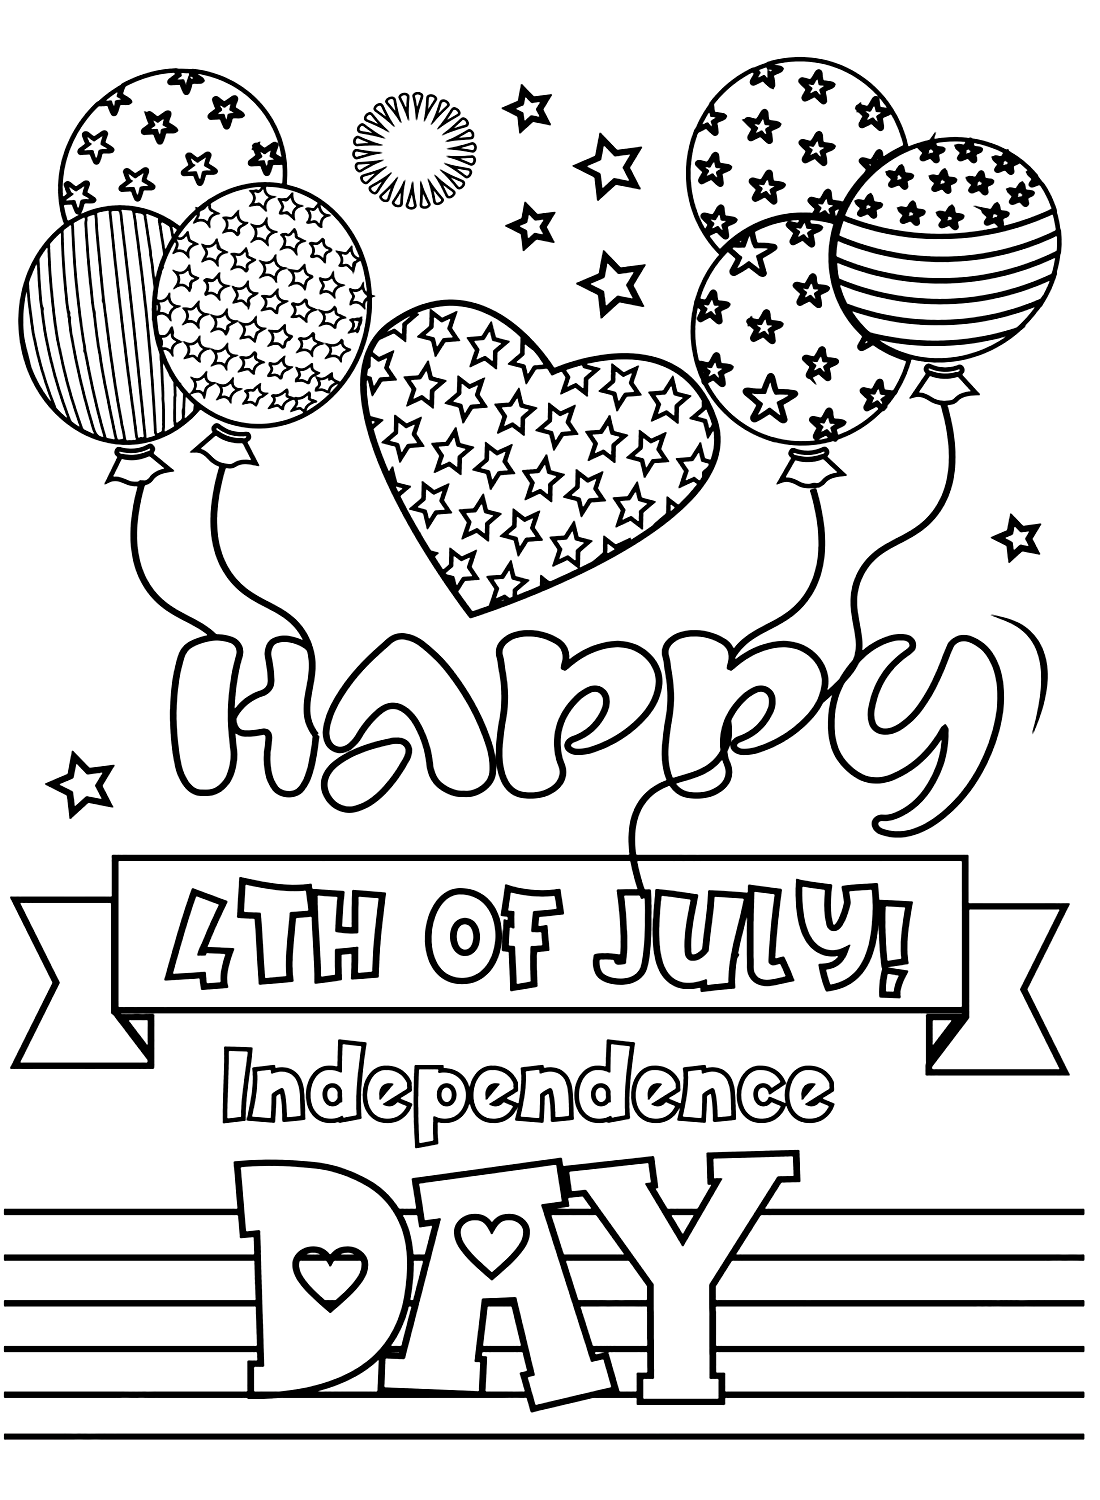 Поздравляем с Днем независимости 4 июля от 4 июля